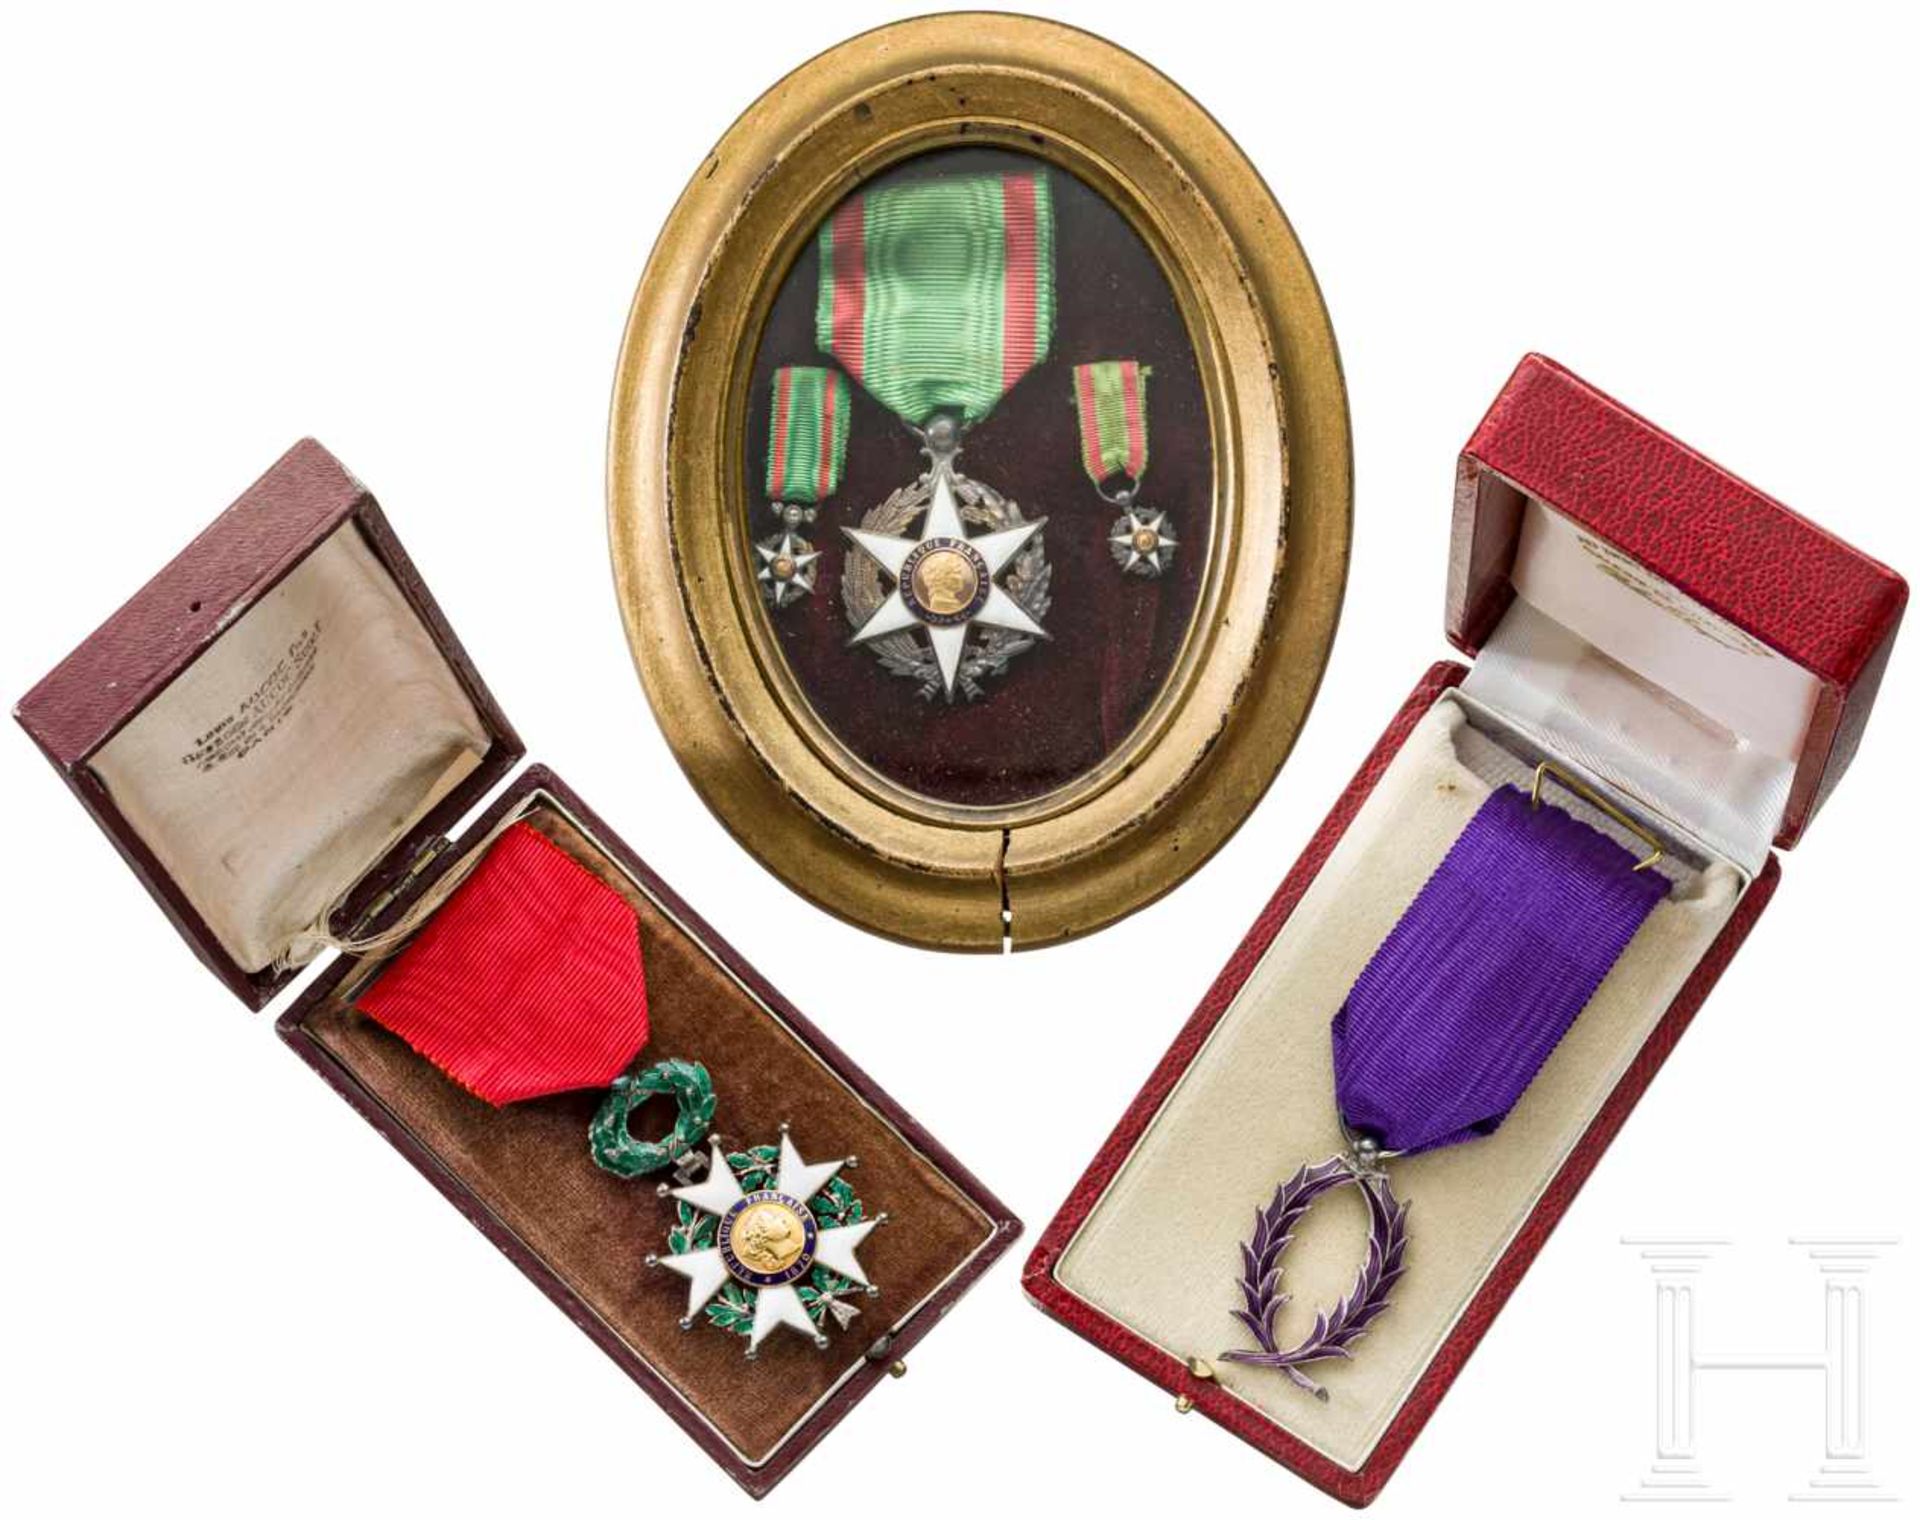 Group of awards, France, 20th centuryOrden der Ehrenlegion (Ritterkreuz) der Dritten Republik,